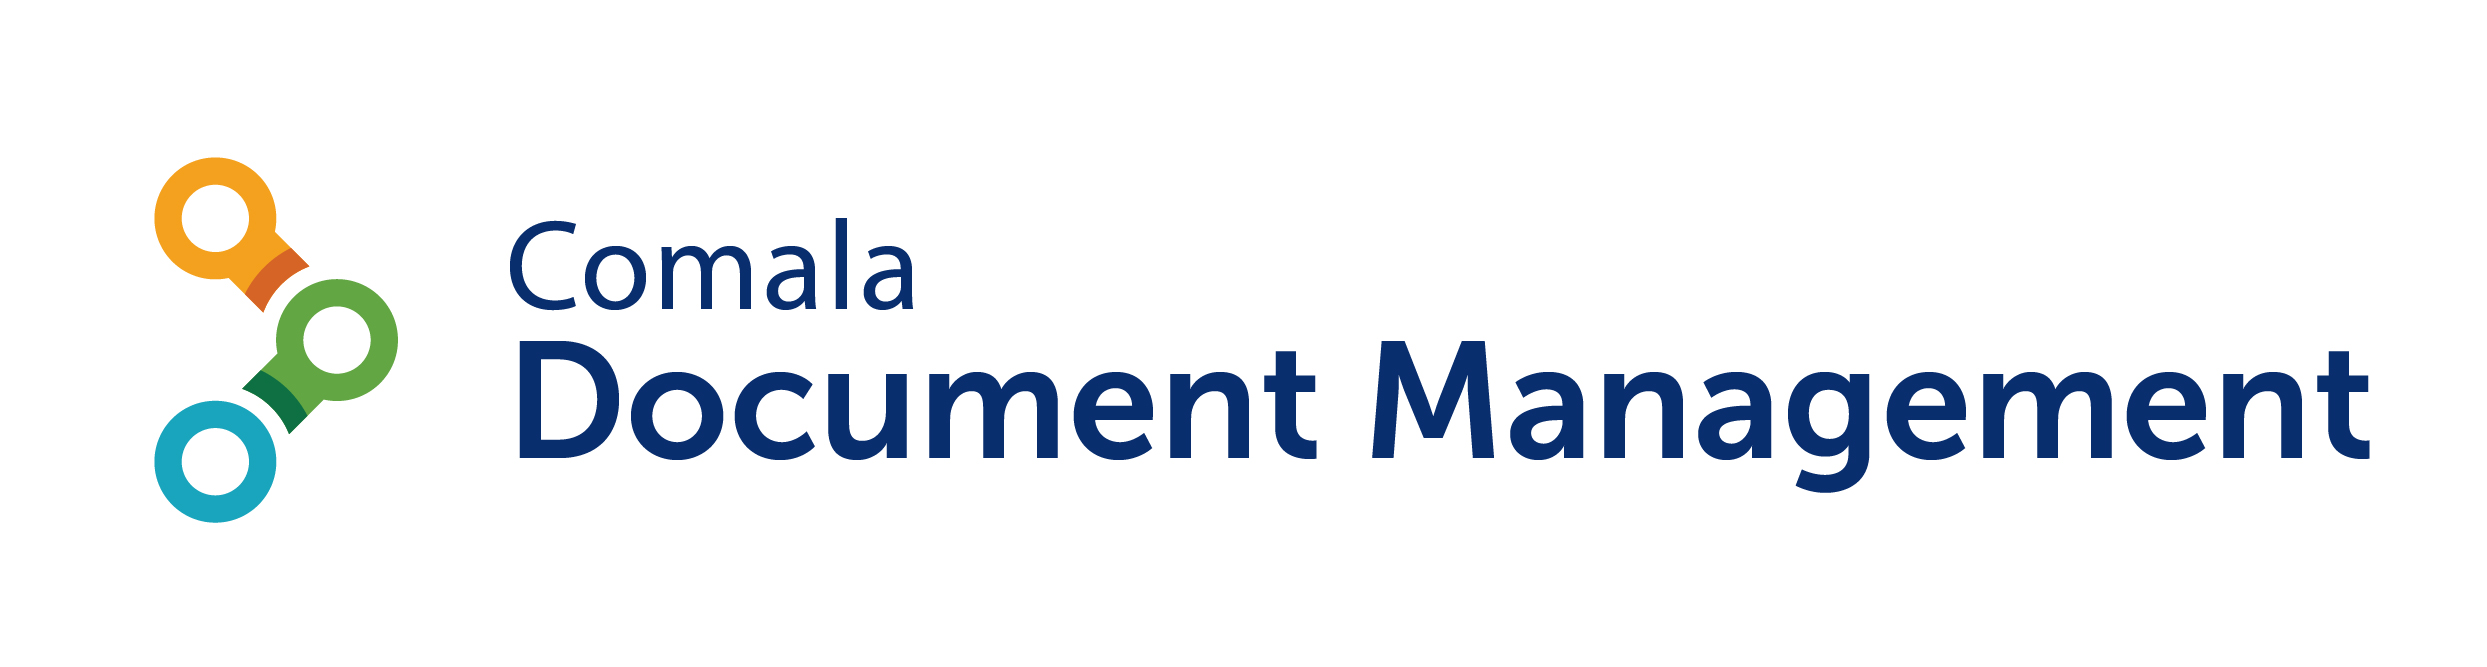 Comala Document Management